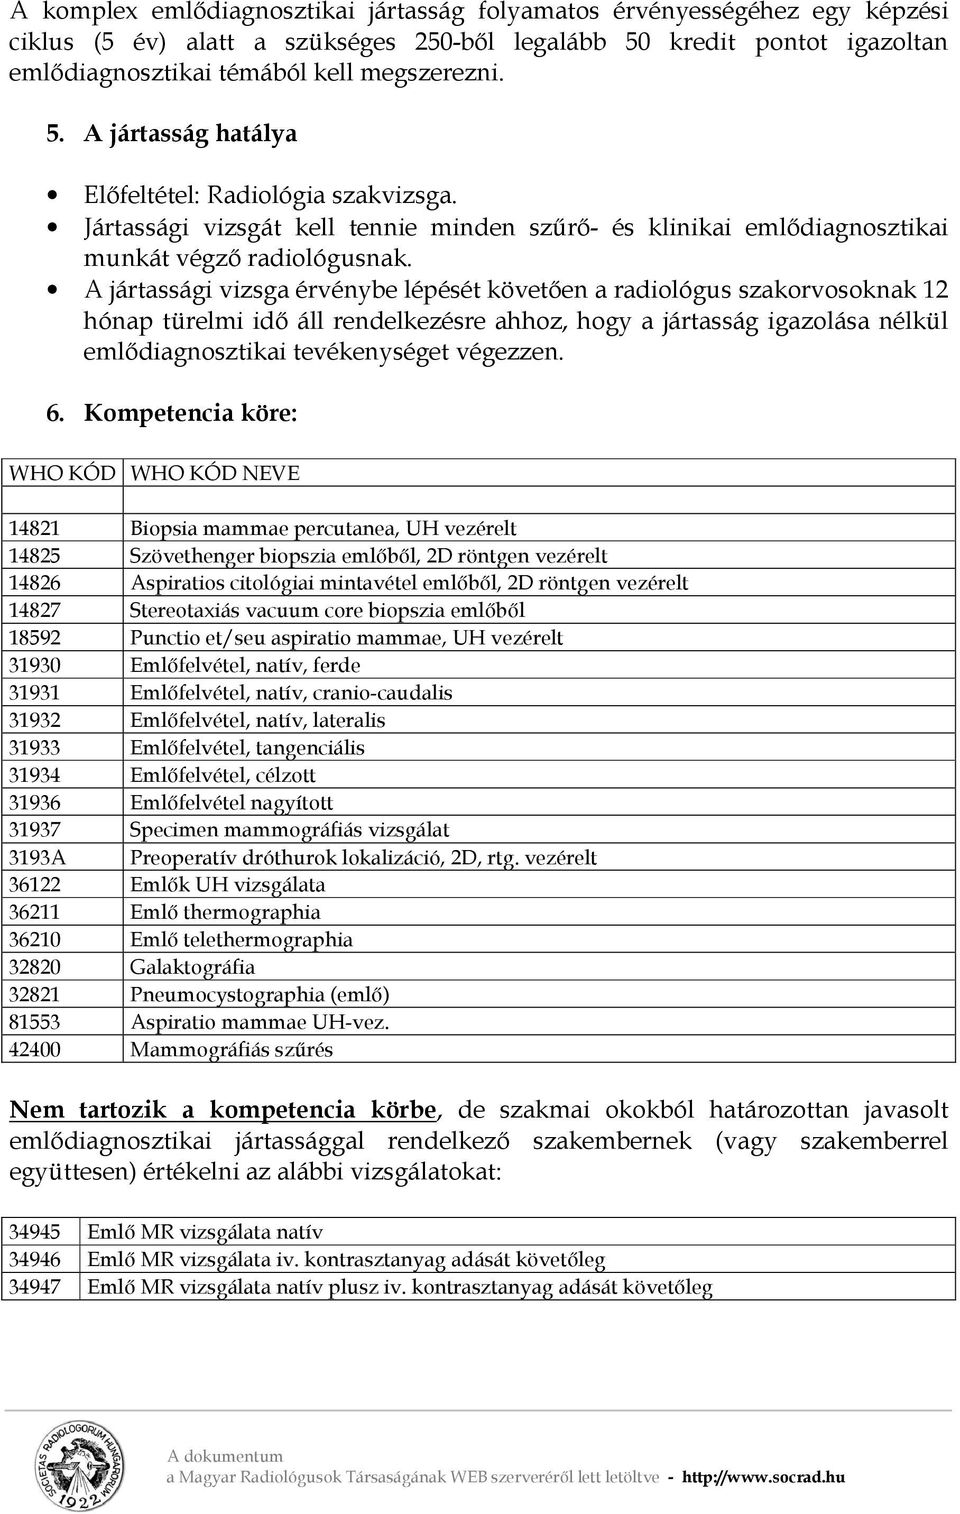 KOMPLEX EMLŐDIAGNOSZTIKAI JÁRTASSÁG (Előterjesztés a Radiológiai Szakmai  Kollégium részére ) - PDF Free Download